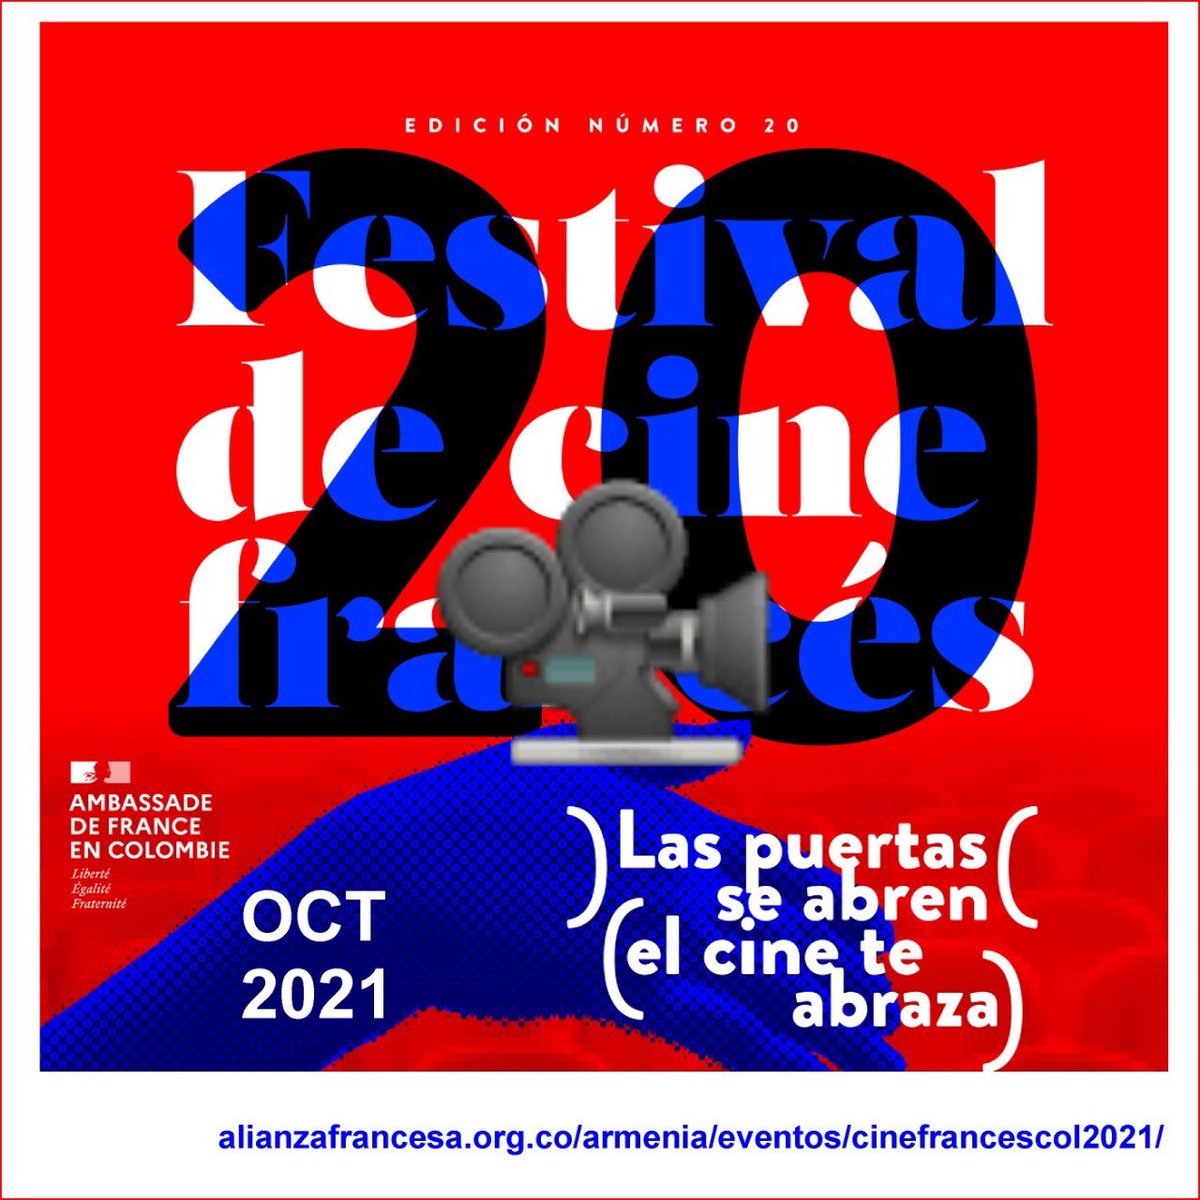 En octubre, Armenia vivirá un monento de cine francés con una versión especial del #FestivalCineFrancés.  

14 octubre, 6:30 pm en el Round Point de la  calle 6 norte, diagonal a la Alianza Francesa de Armenia
Proyección apoyada por #Corpocultura en el Cine Bajo Las Estrellas.